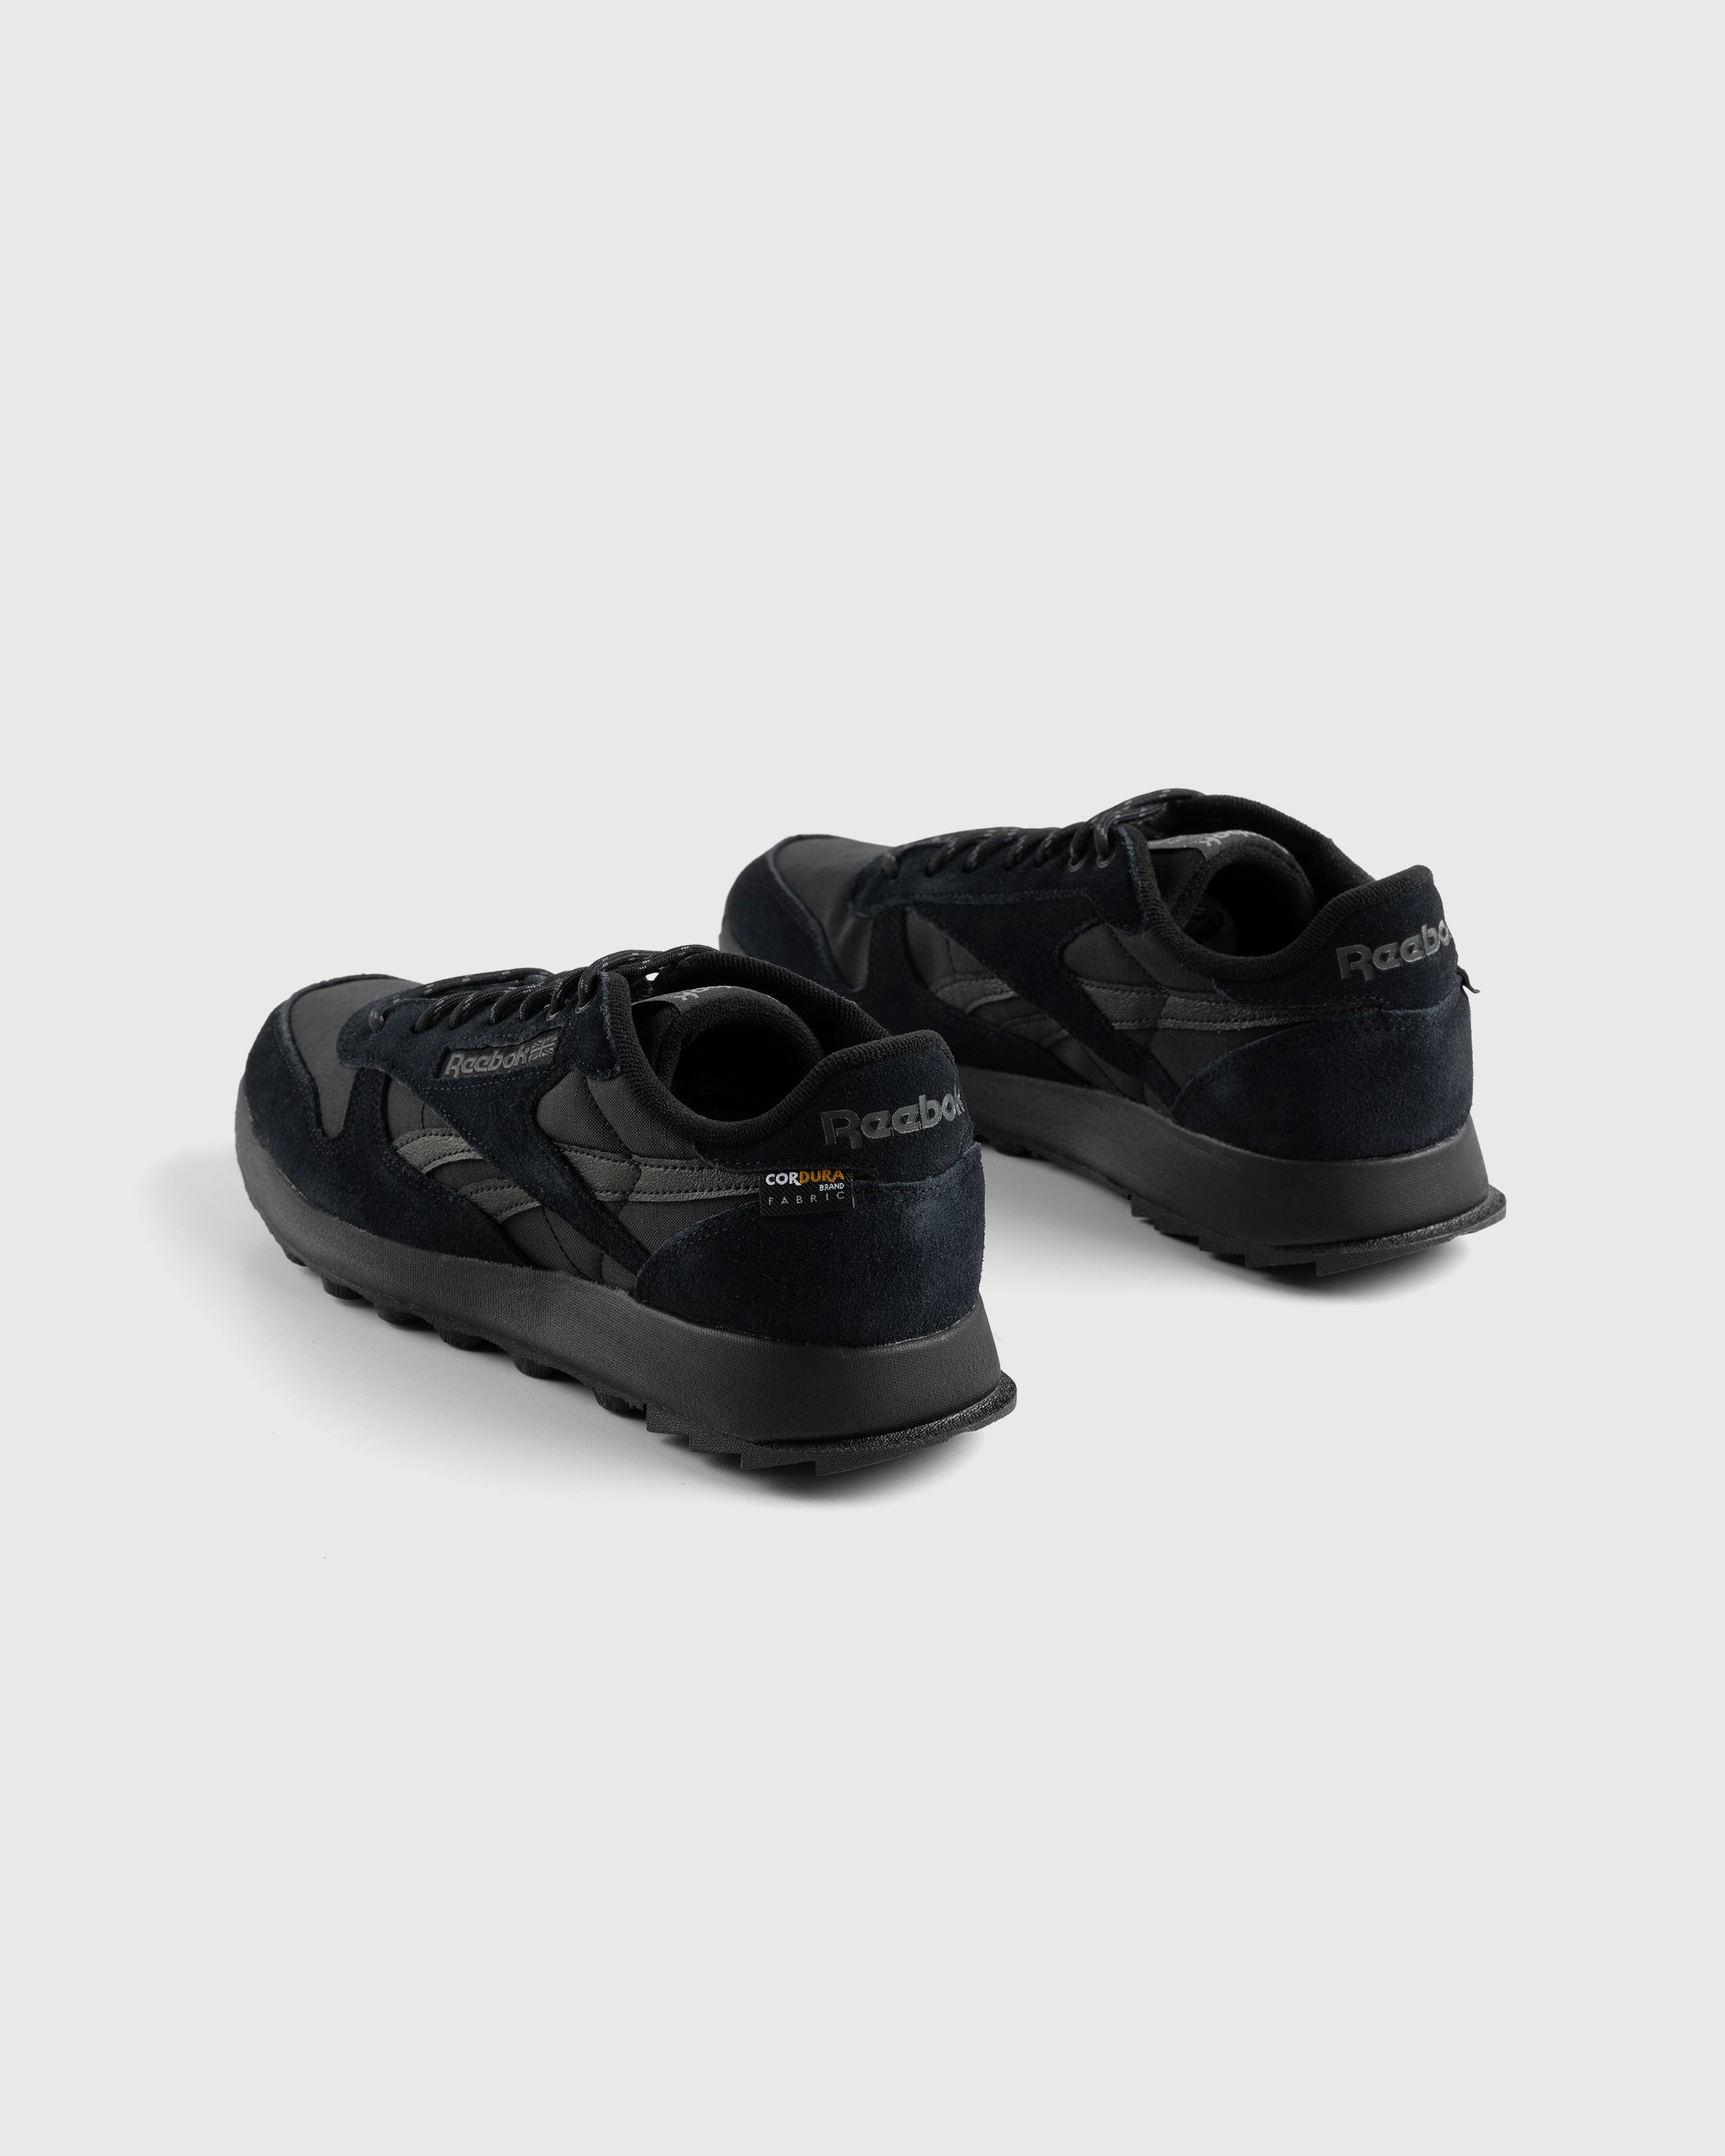 Reebok - LX2200 Black - Footwear - Black - Image 4